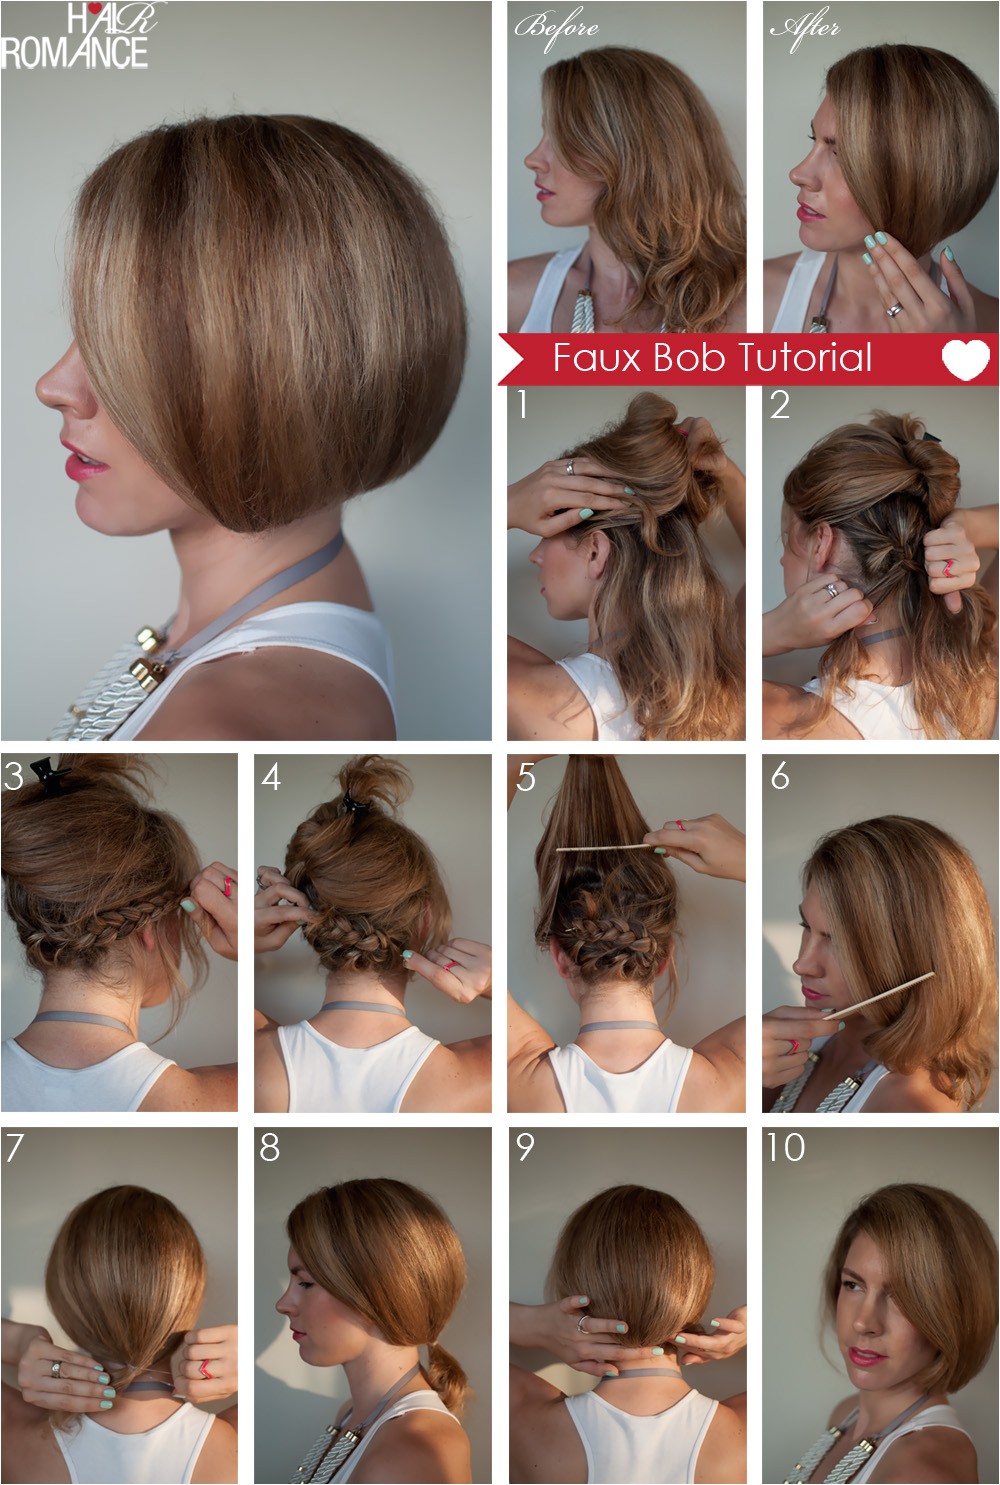 How to Do A Bob Haircut Hair Tutorial How to Create A Faux Bob Hair Romance